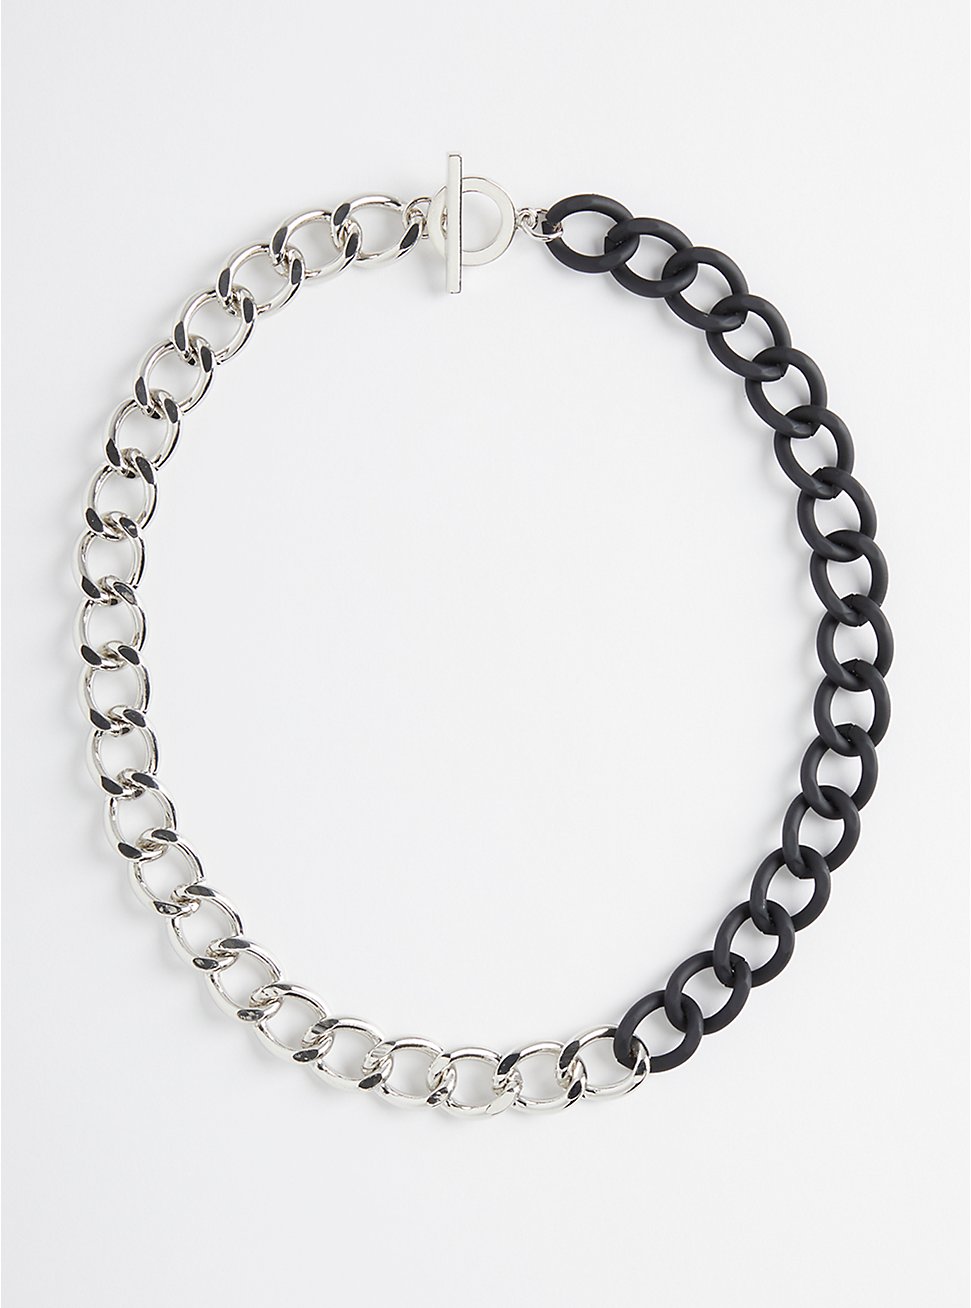 Plus Size Link Necklace - Hematite & Silver Tone, , hi-res